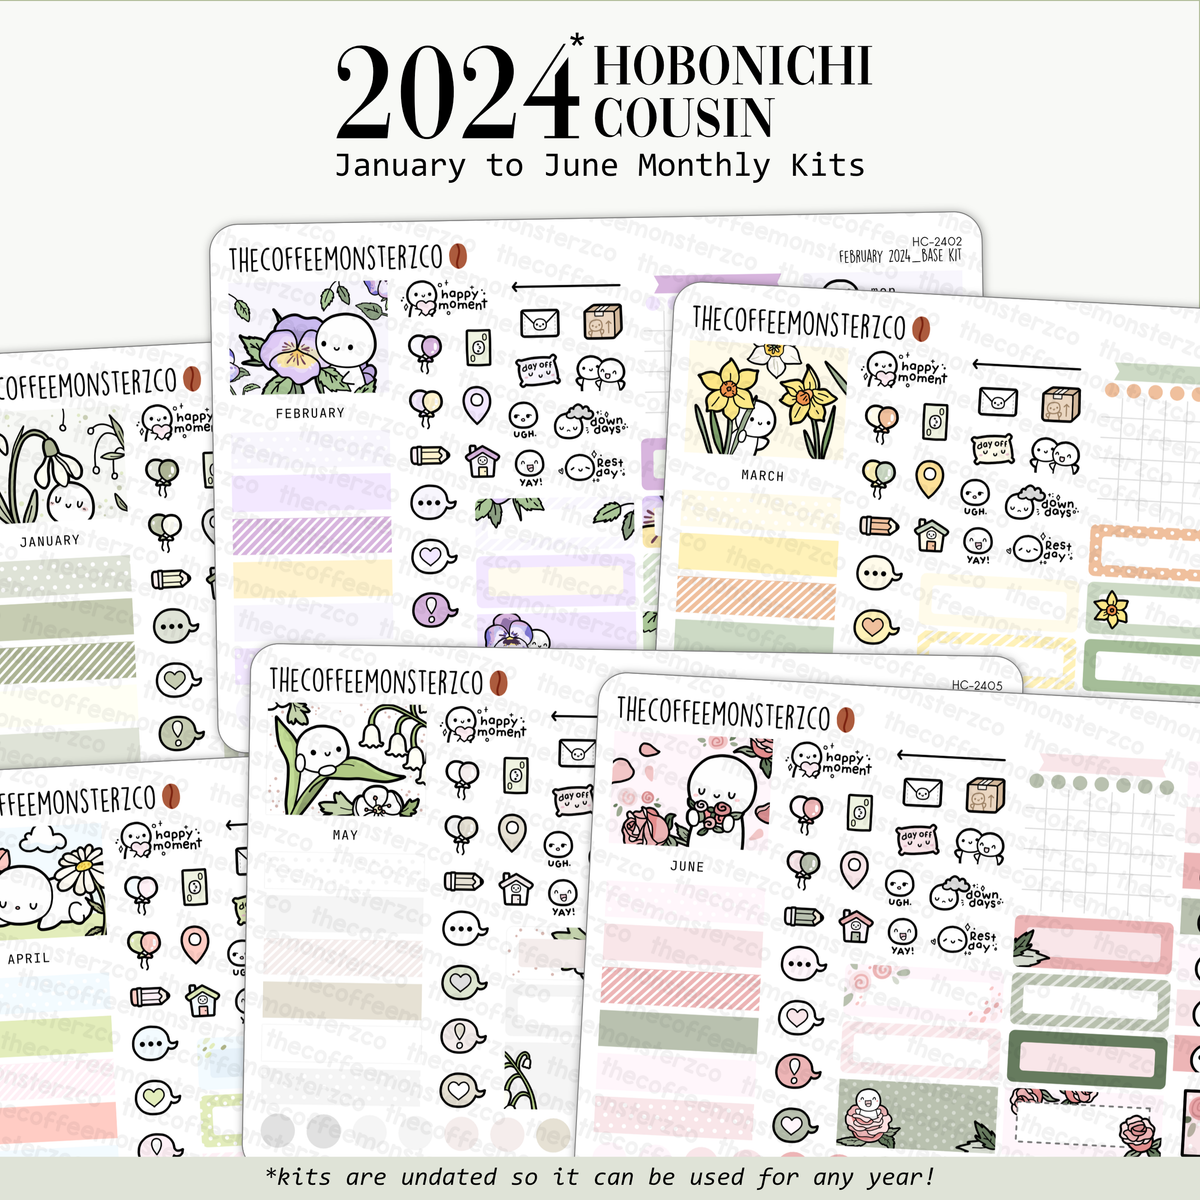 Fall Blossoms Journaling Kit for Hobonichi Bullet Journals Planner